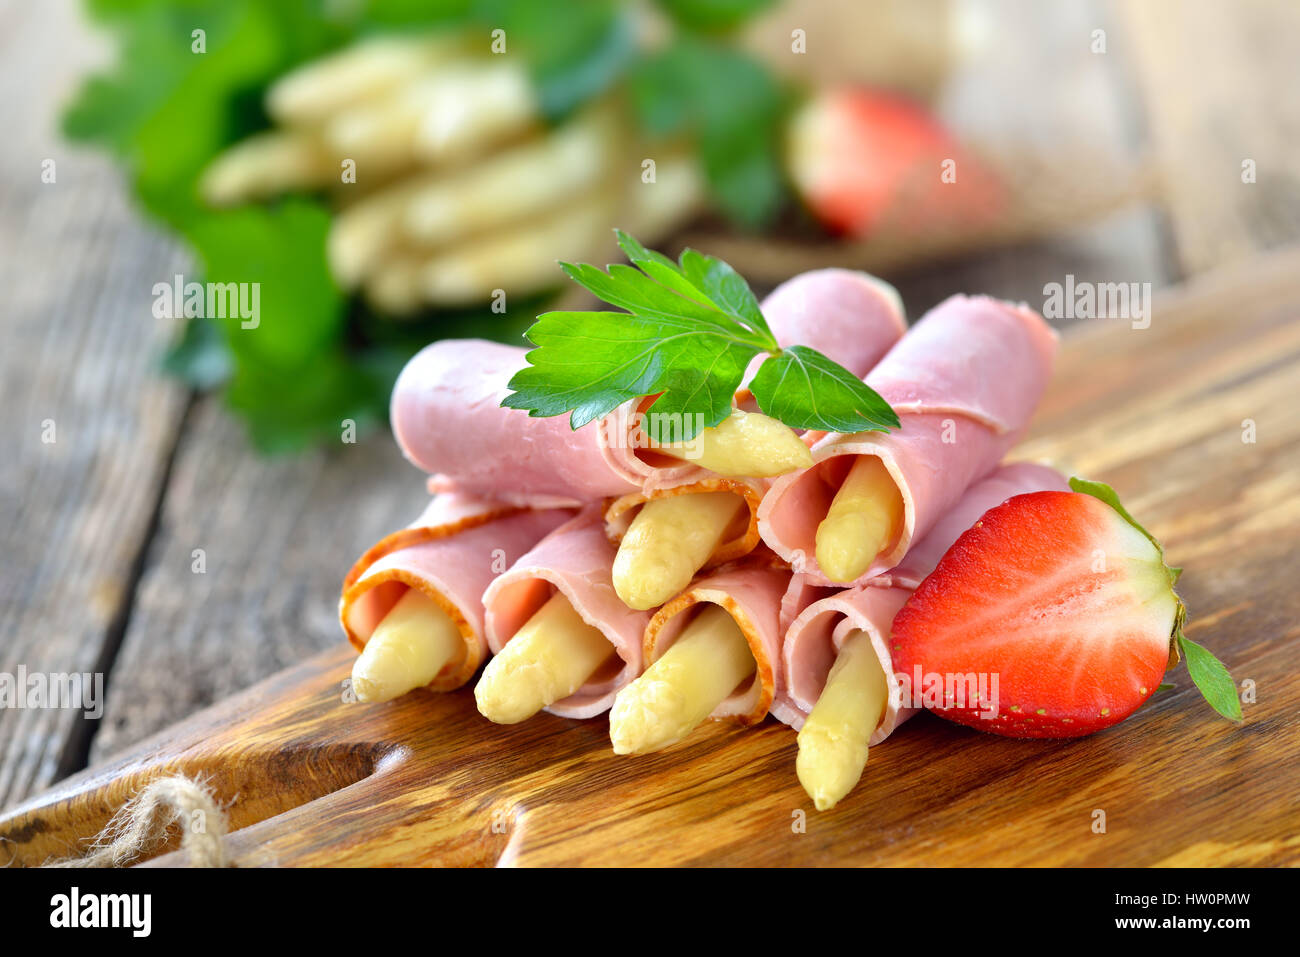 Rouleaux de jambon cuit avec de l'asperge blanche sur une planche en bois avec des fraises Banque D'Images